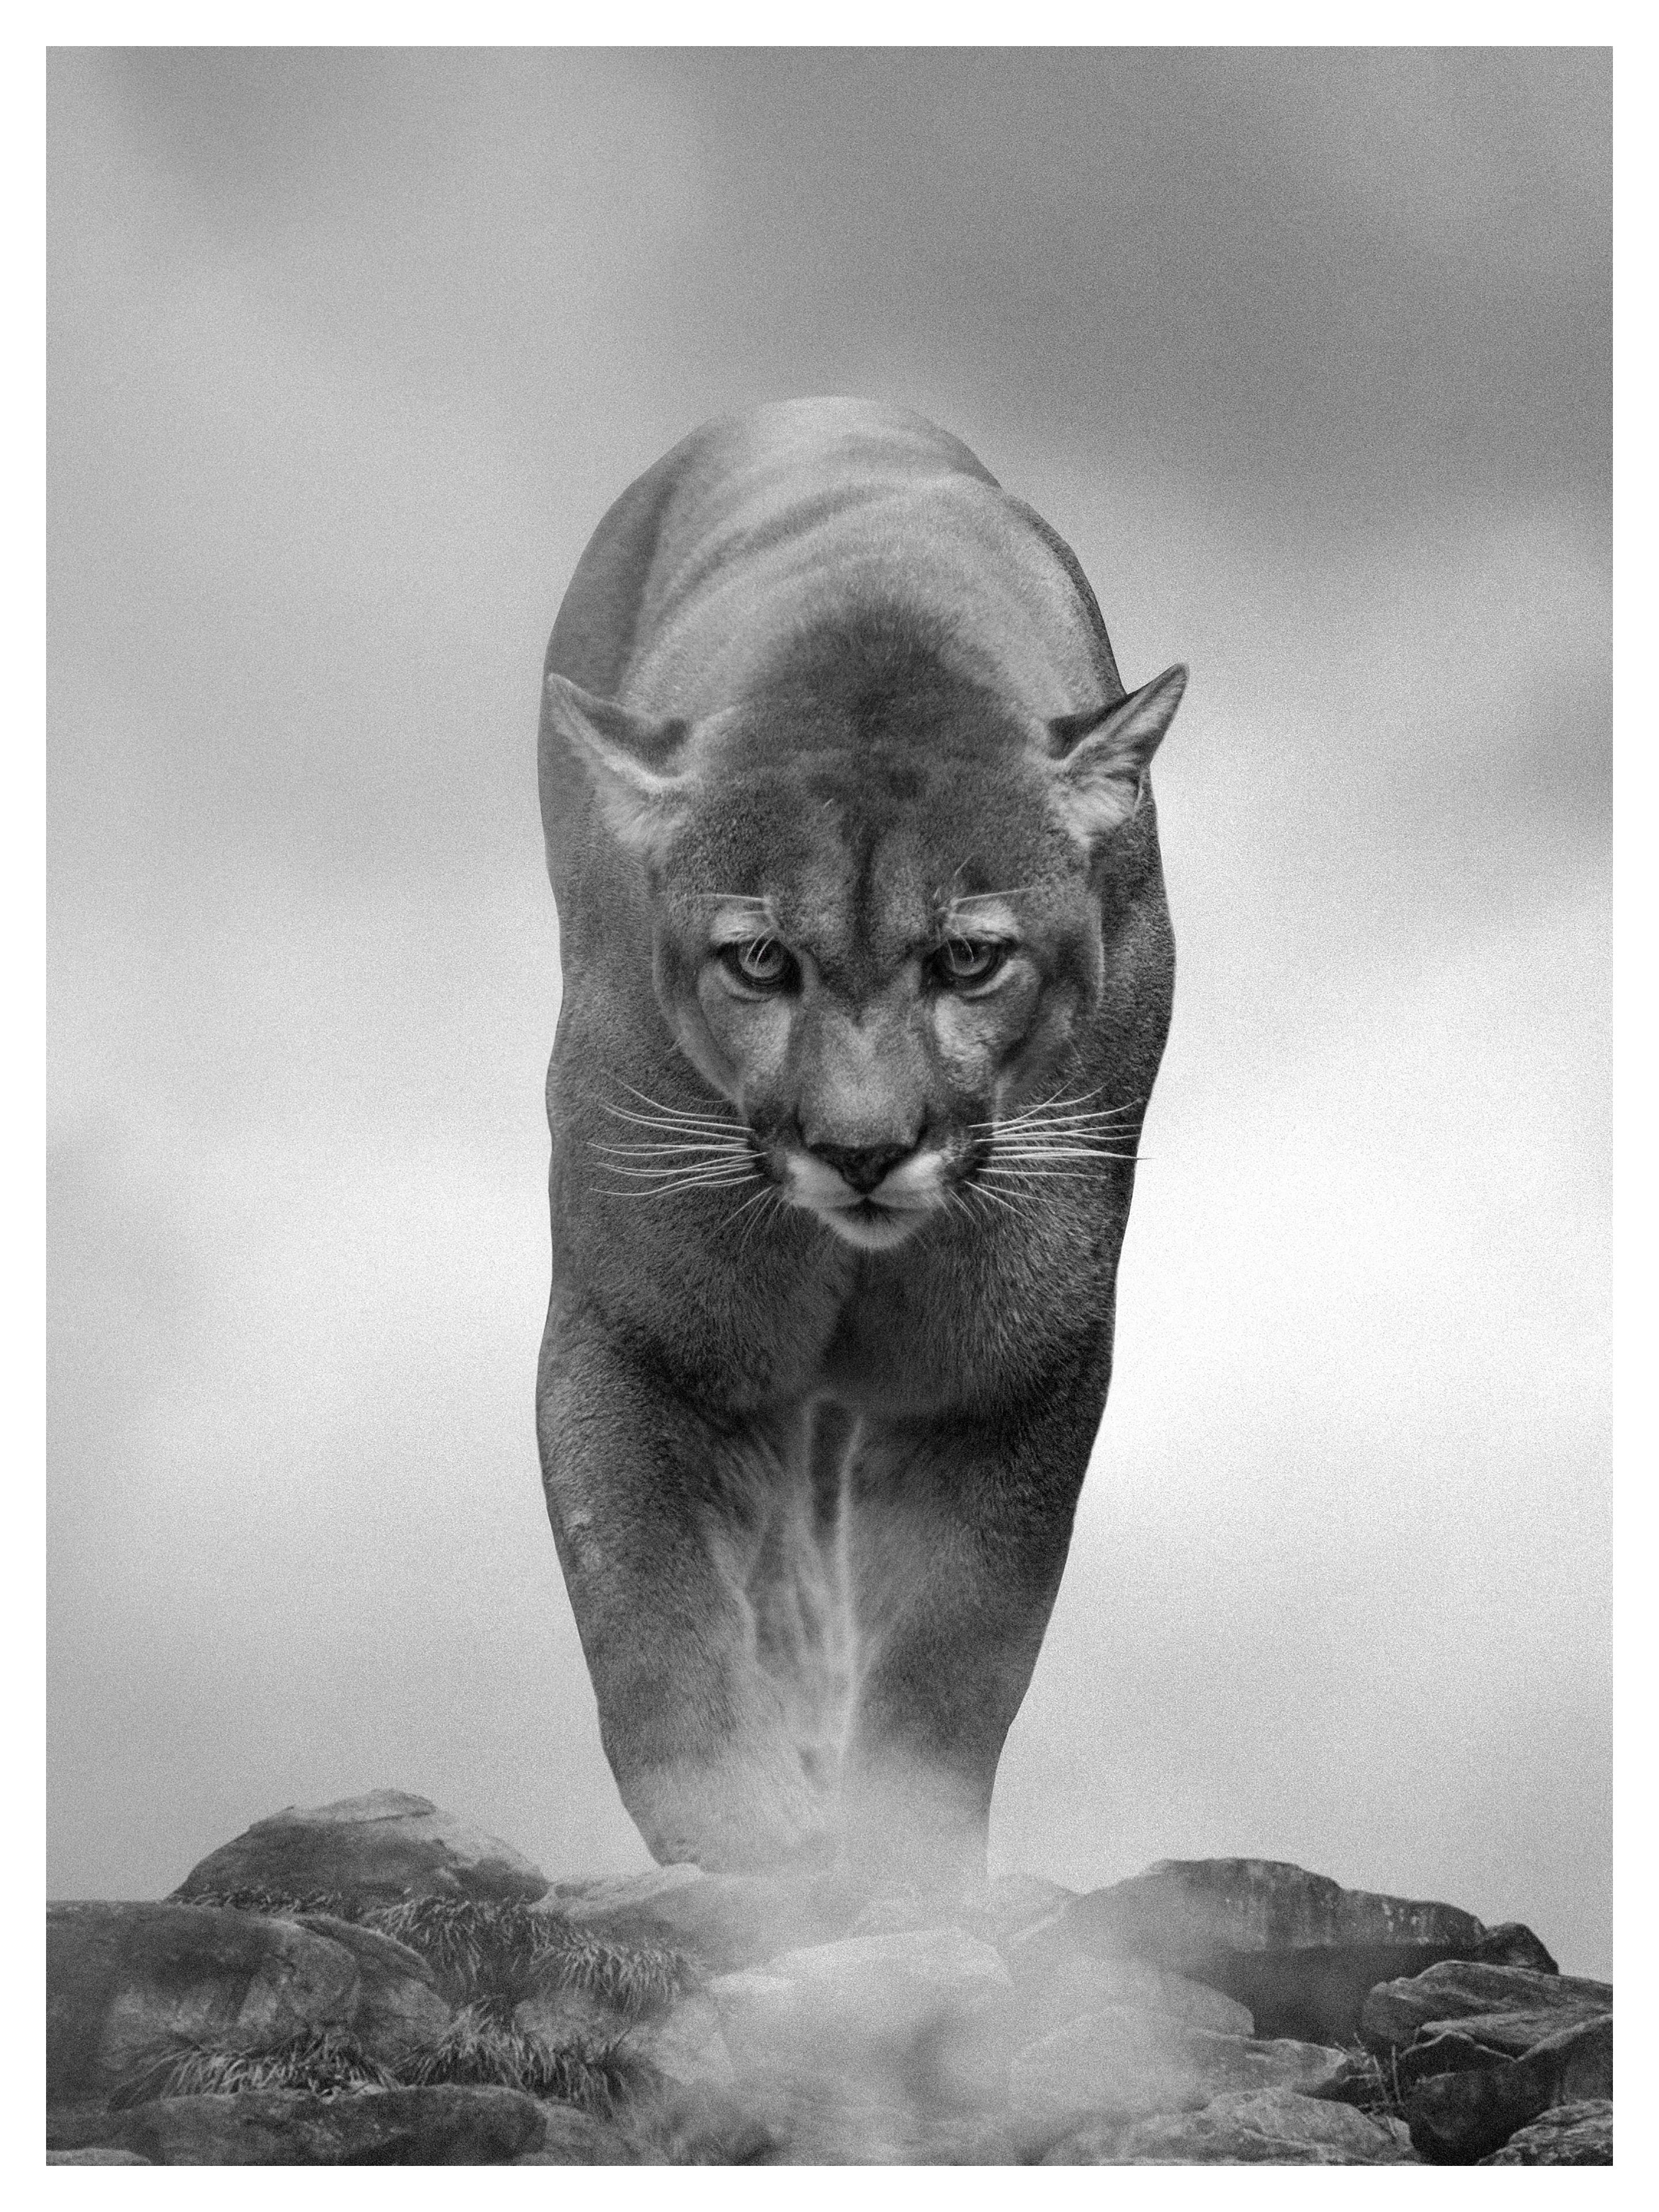 Black and White Photograph Shane Russeck - Photographie noir et blanc « King of the Mountain » 40x60, Cougar, Art lion de montagne